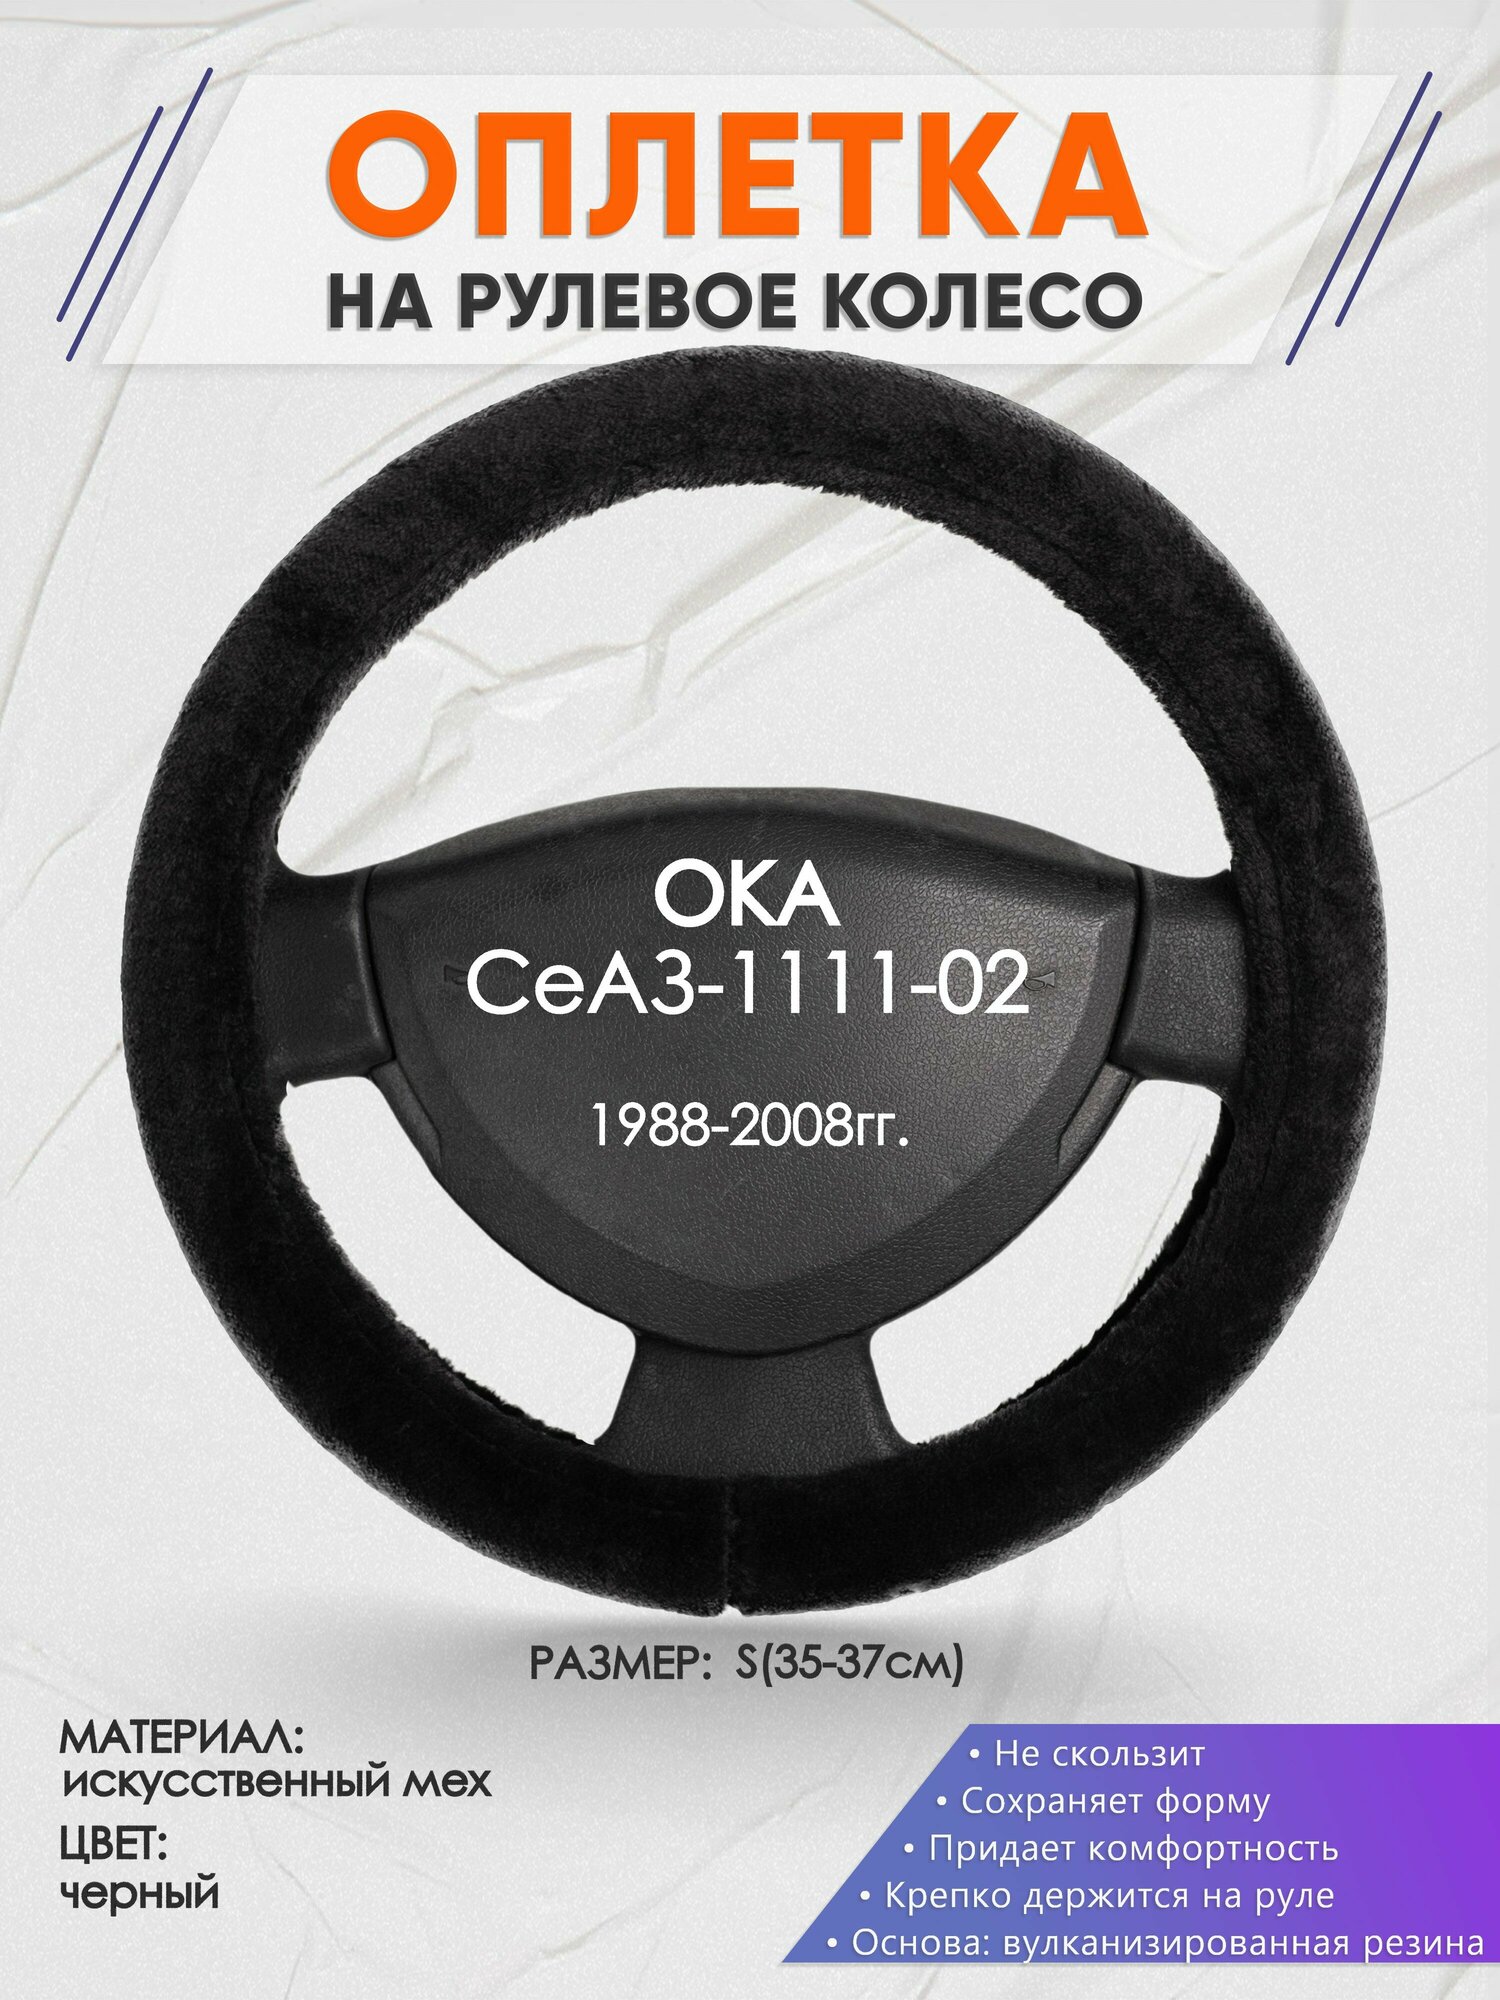 Оплетка на руль для ОКА СеАЗ-1111-02(ОКА ) 1988-2008, S(35-37см), Искусственный мех 45